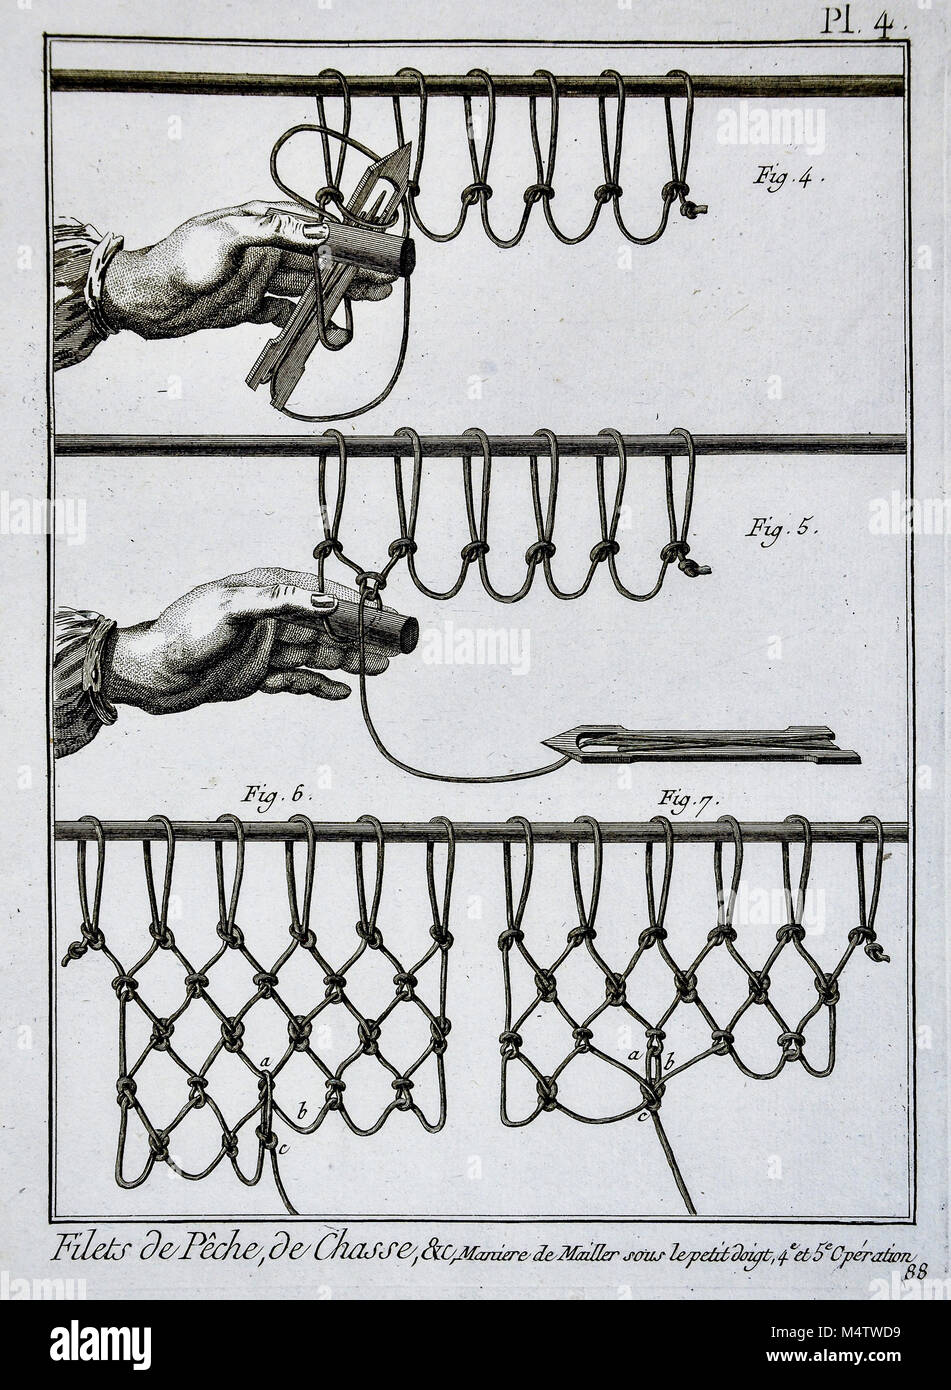 Encyclopedie Methodoque 1782 Print - Fish Net Weaving - Knot Tying